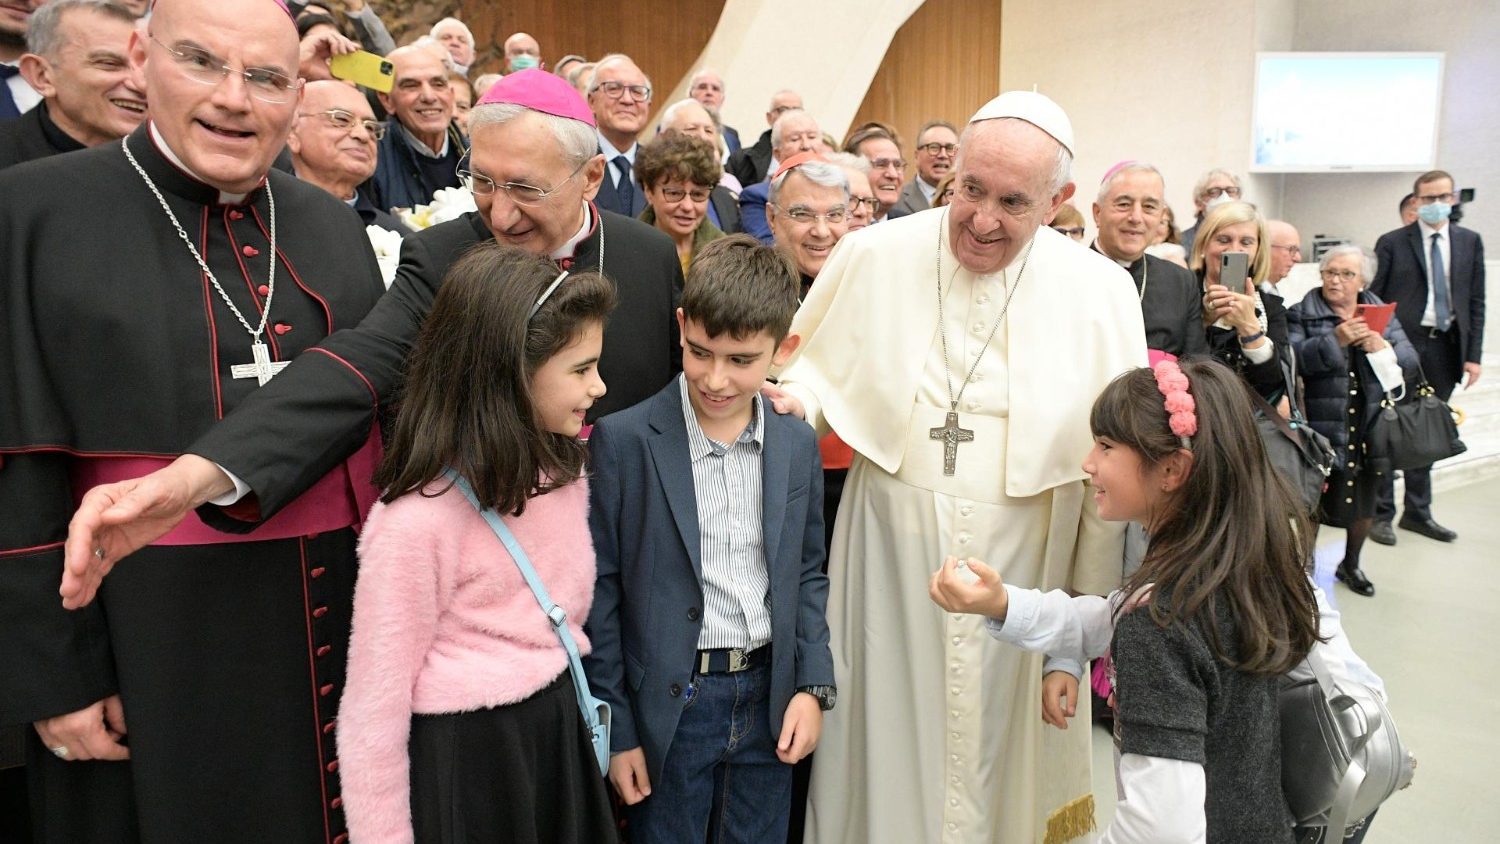 Promluva papeže Františka: Ovoce Ducha